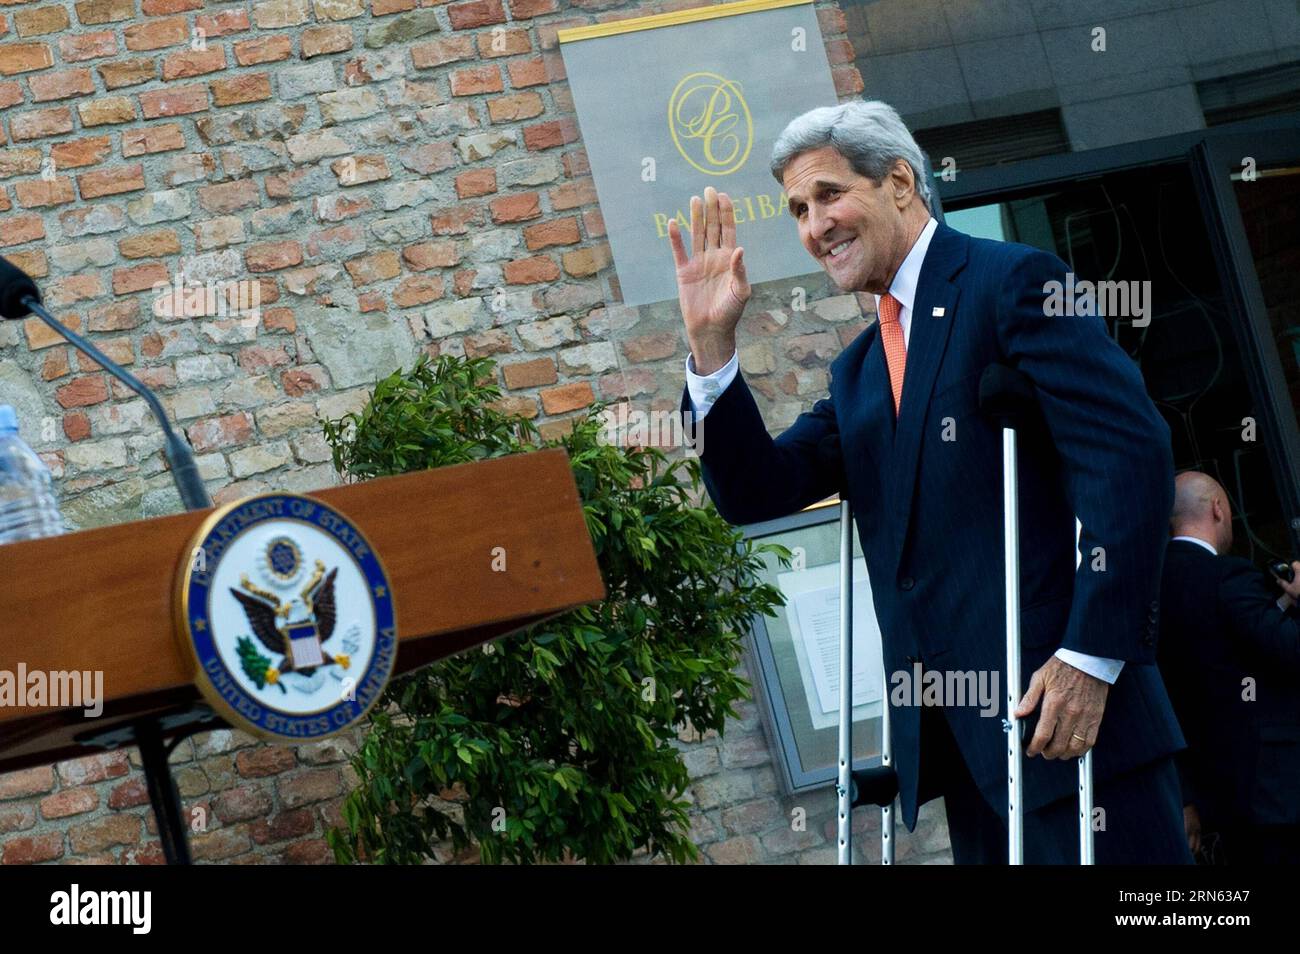 (150709) -- VIENNA, 9 luglio 2015 -- il Segretario di Stato americano John Kerry reagisce prima di una conferenza stampa di fronte al Palais Coburg, dove si svolgono i colloqui nucleari iraniani, a Vienna, in Austria, 9 luglio 2015. John Kerry giovedì ha detto che alcune delle questioni difficili rimangono irrisolte nei colloqui nucleari in corso, dicendo che decisioni difficili devono essere prese molto presto. ) AUSTRIA-VIENNA-IRAN COLLOQUI NUCLEARI-JOHN KERRY QianxYi PUBLICATIONxNOTxINxCHN 150709 Vienna 9 luglio 2015 il Segretario di Stato Degli Stati Uniti John Kerry reagisce di fronte a una conferenza stampa di fronte al Palais Coburg, dove si svolgono i colloqui nucleari in Iran Foto Stock